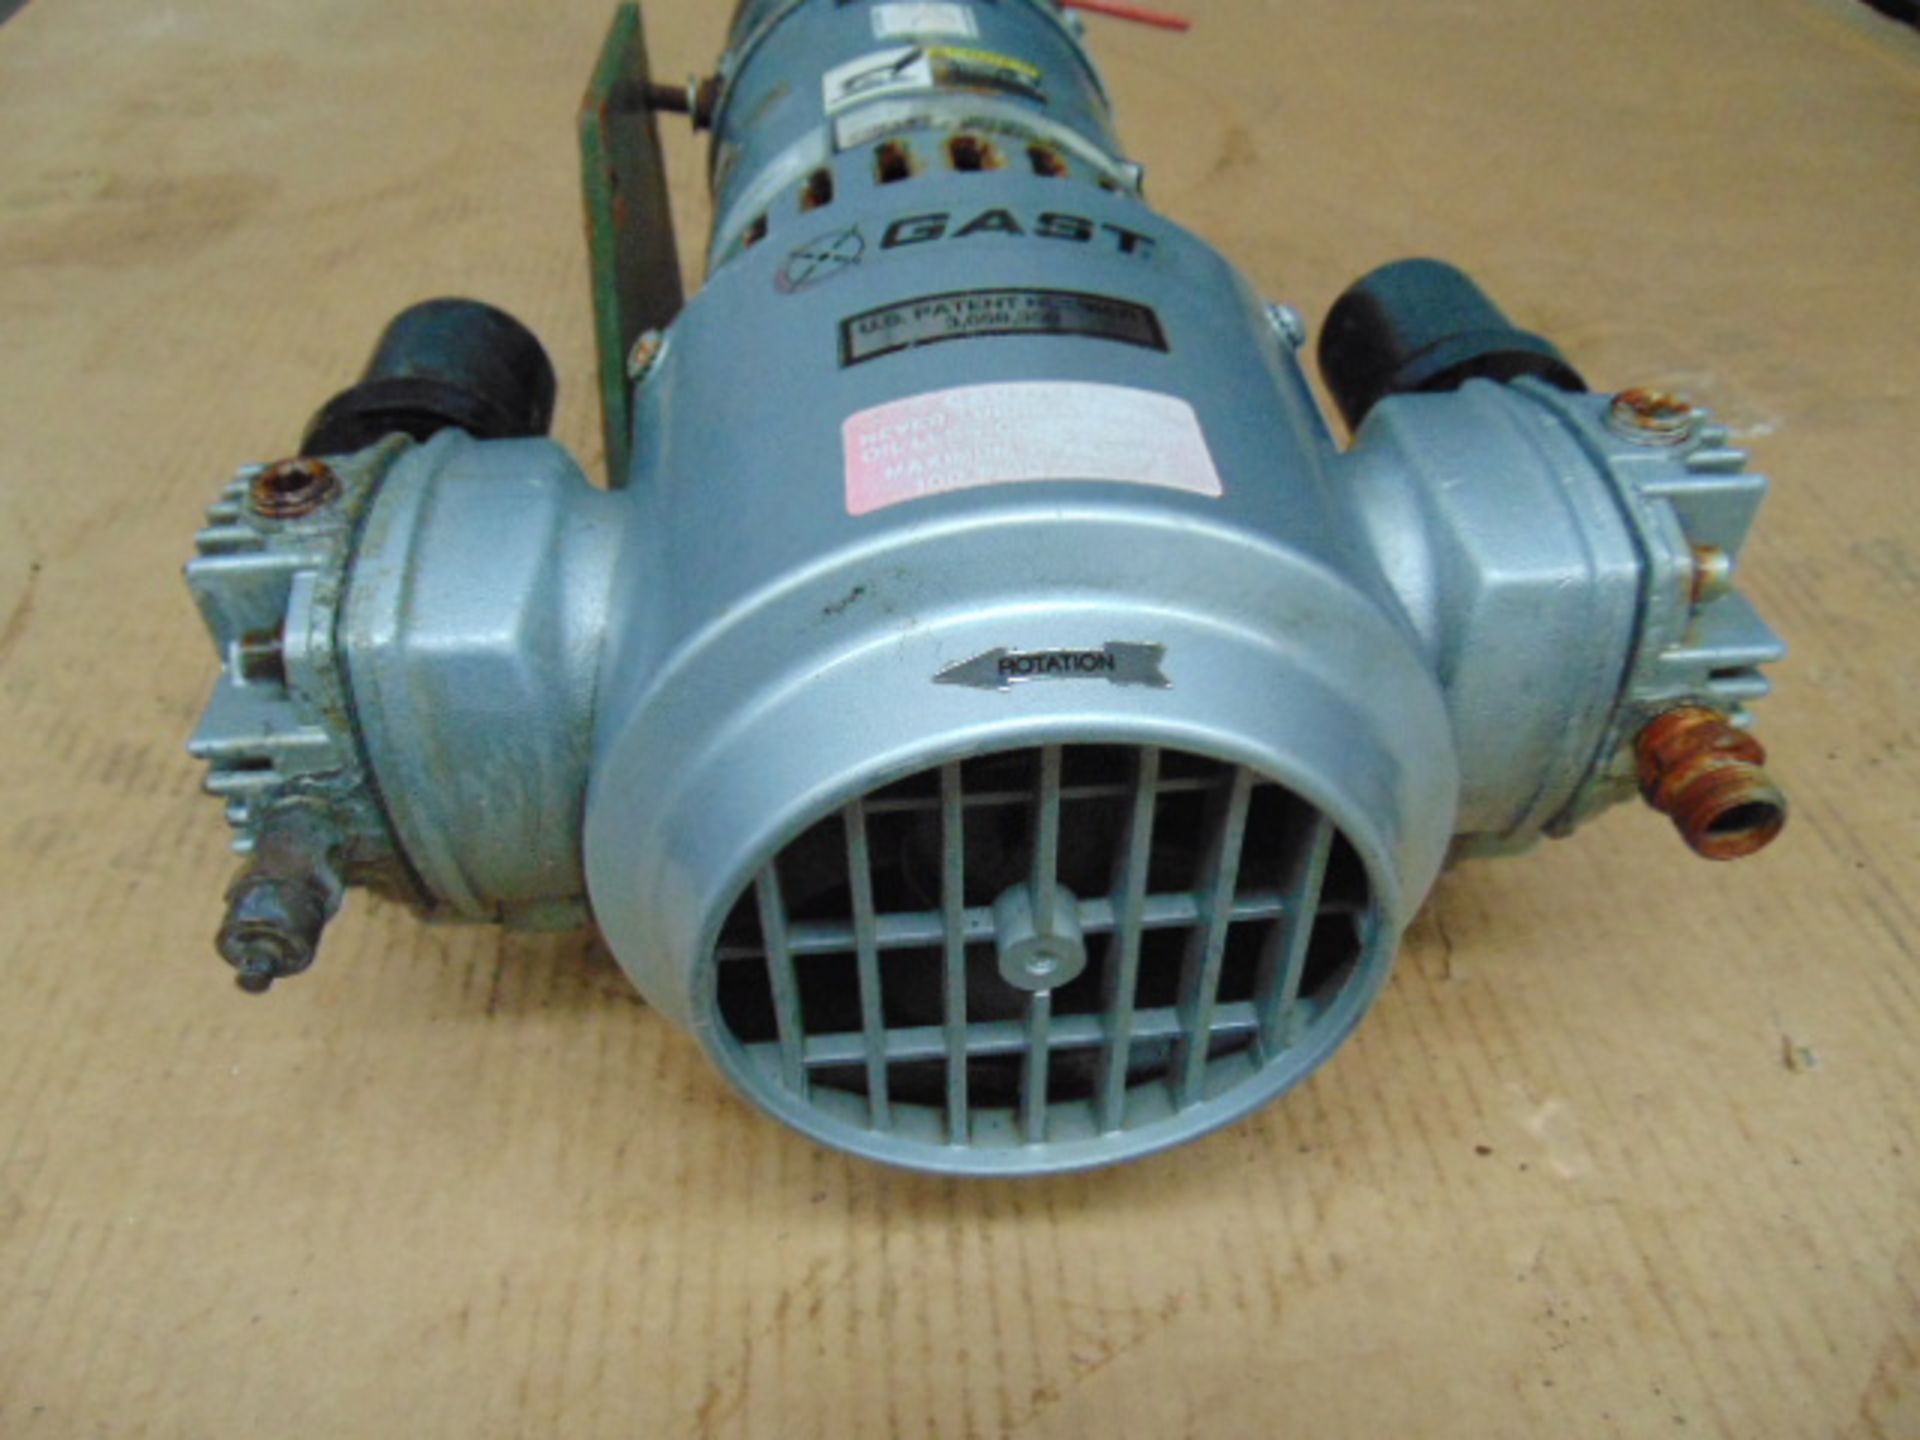 Gast 24V Compressor - Image 3 of 6